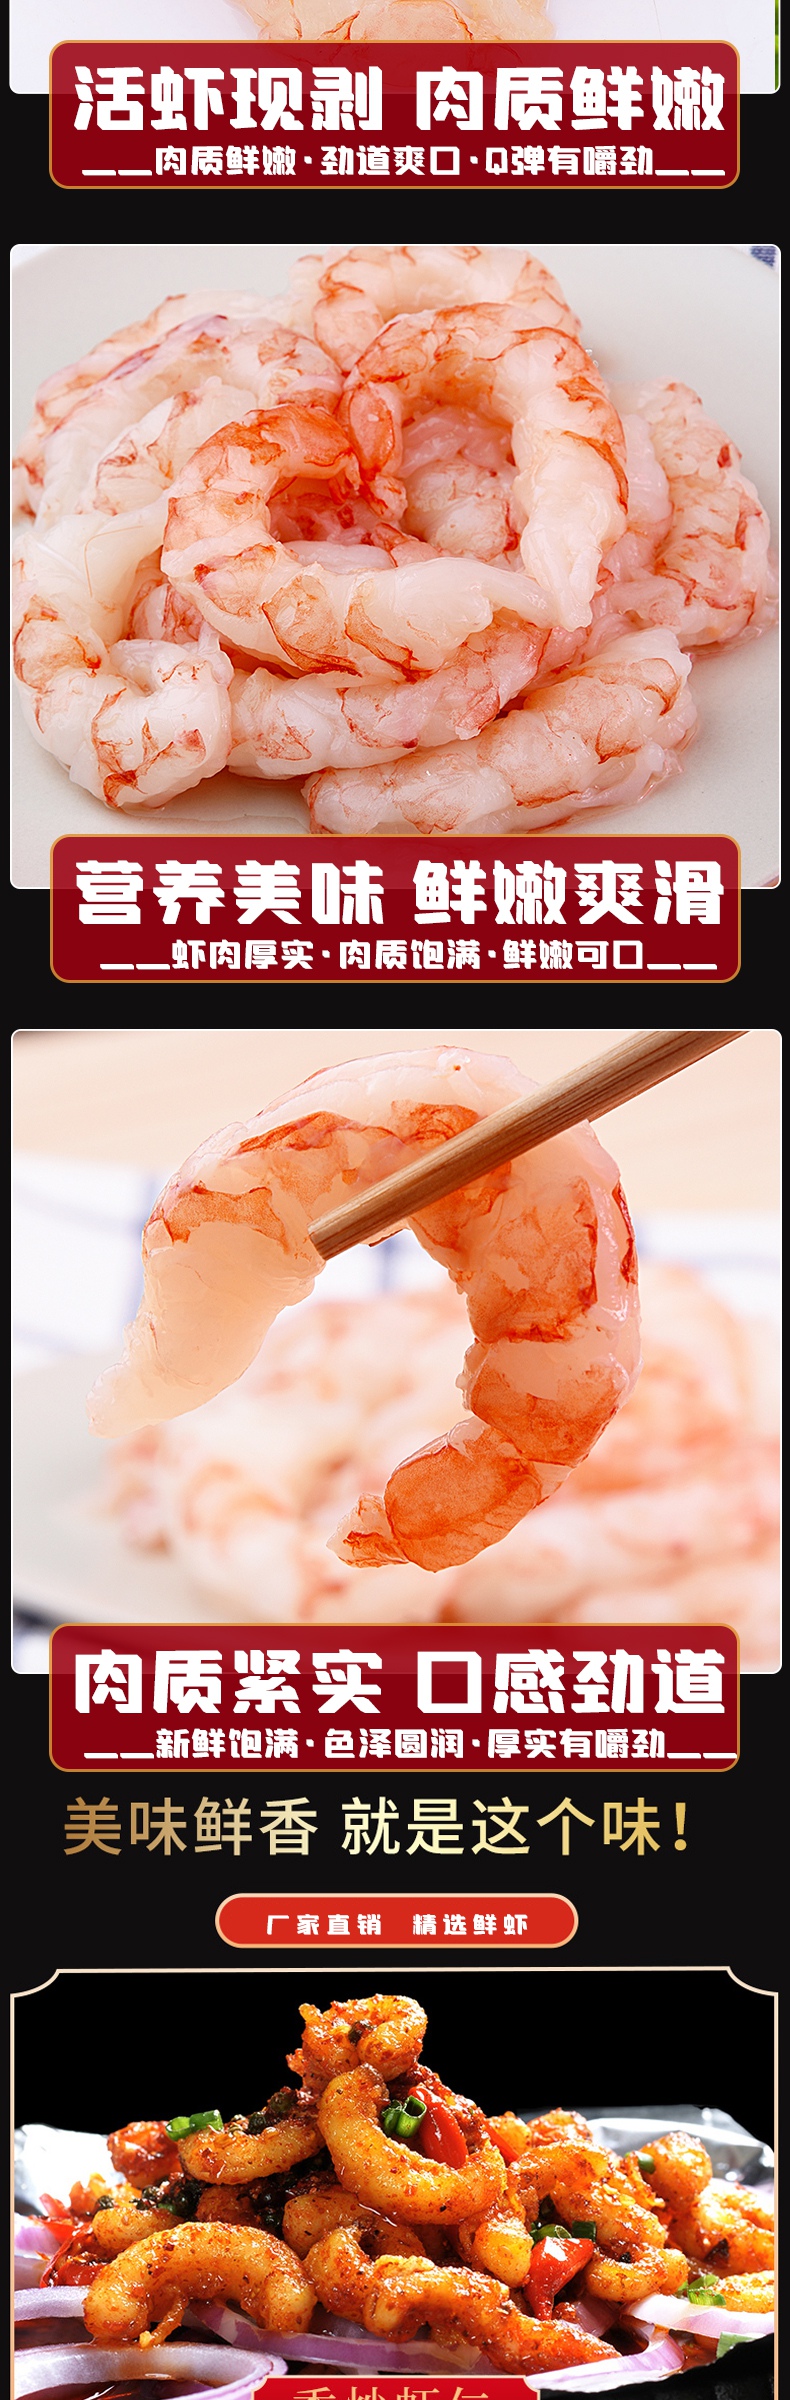 精选海捕虾仁干货海鲜进口食品虾米详情